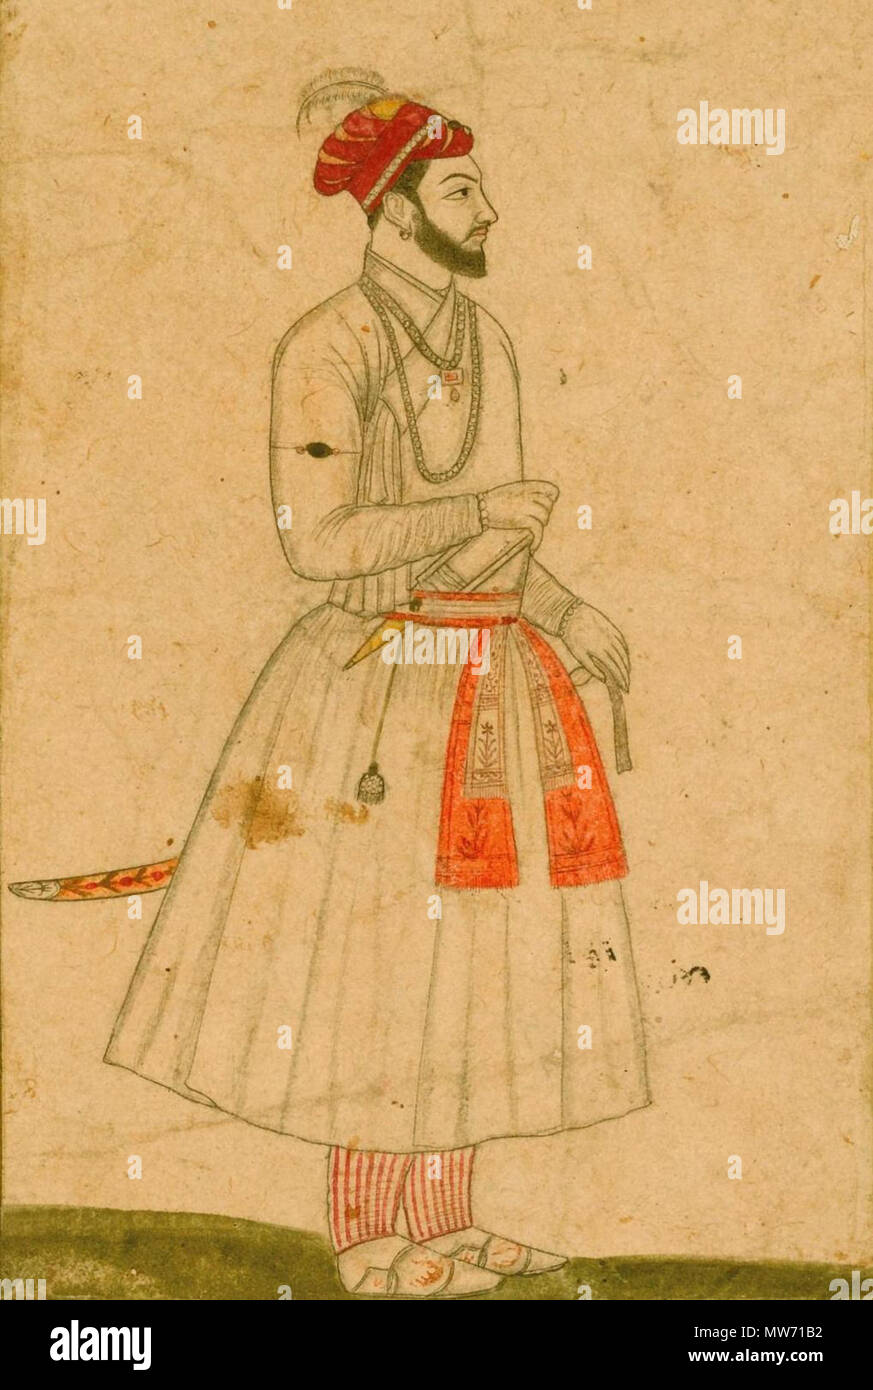 . Englisch: ein Porträt des Prinzen kam Baksh, der Sohn Aurangzeb, Indien, Mughal, 18. Jahrhundert Schätzung: 500 - 800 GBP VIEL VERKAUFT. 2.750 GBP (Hammer Preis bei Käuferprovision) Tinte mit Verwendung von Farben auf Papier, auf dem Album Seite mit gold-Blau gesprenkelt Grenzen, in den unteren Rand und auf der Rückseite in Schwarz Tinte in nasta'liq Skript habihi Shahzadeh kam Bakhsh' Zeichnung bezeichnet: 18,6 10,4 cm. Blatt: 44,3 bis 28,6 cm. 18. Indien, Mughal, 21 ein Porträt des Prinzen kam Baksh, der Sohn Aurangzeb (7/8) Stockfoto